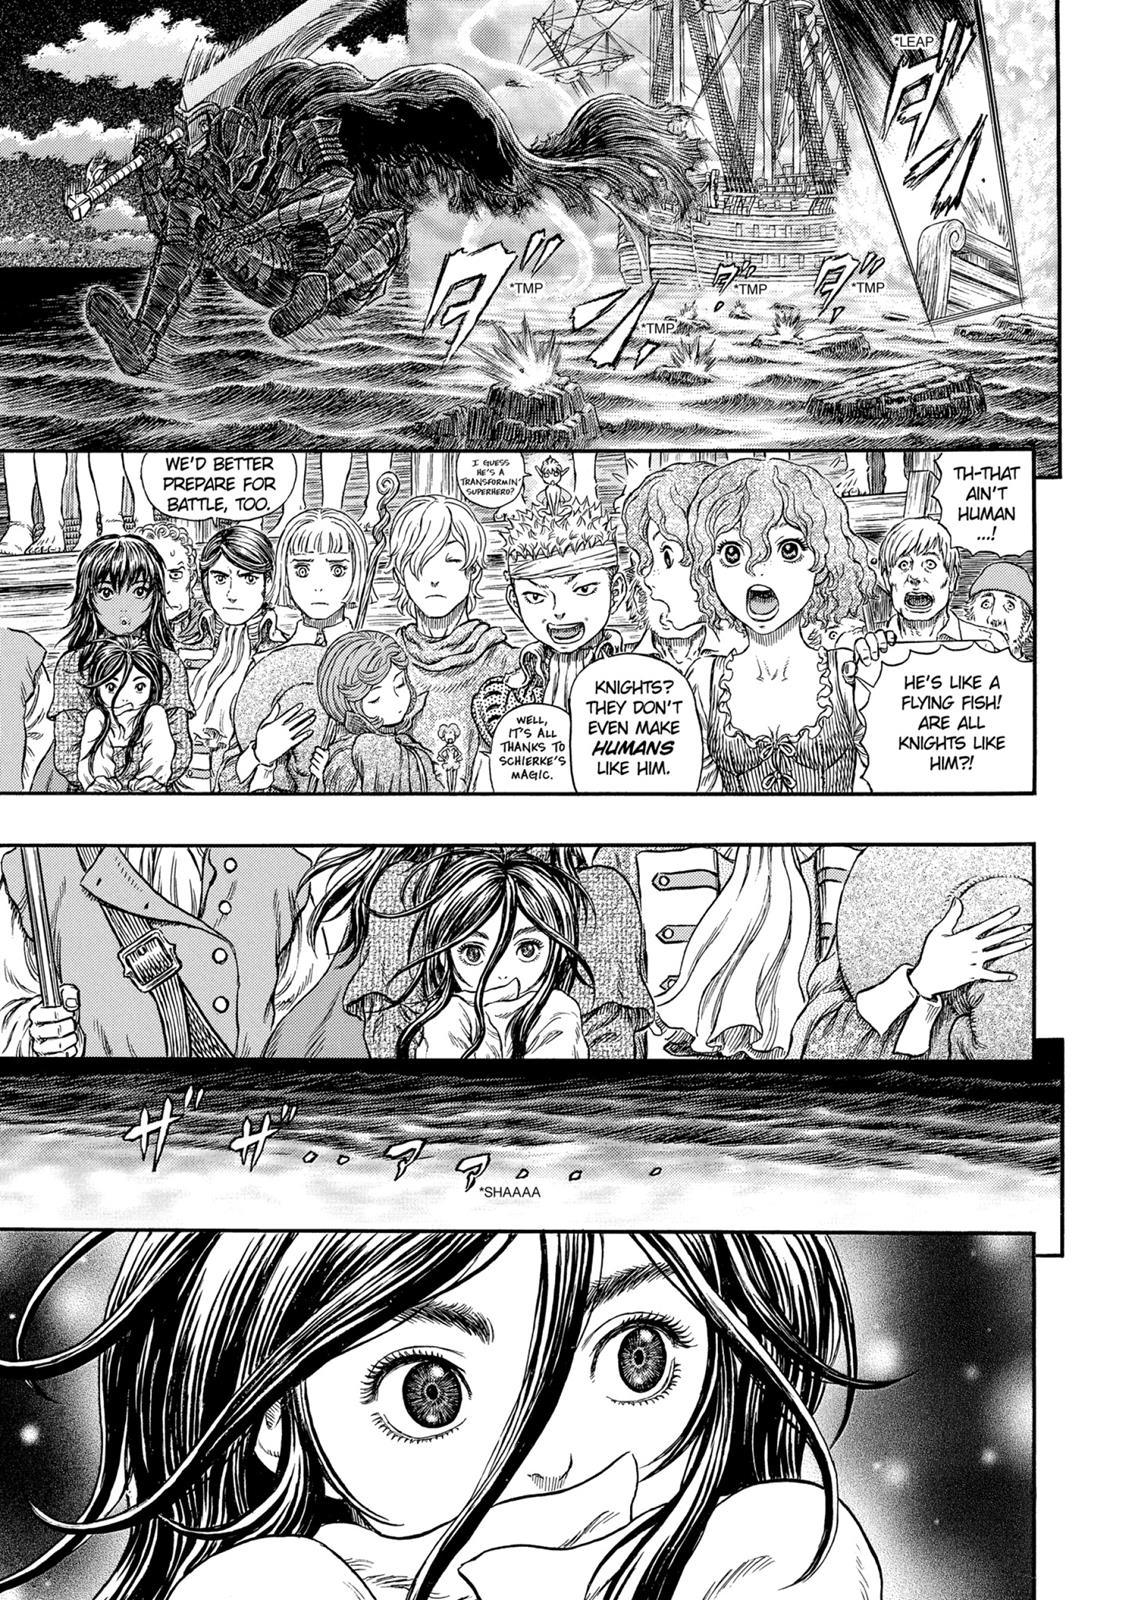 Berserk Manga Chapter 318 image 15